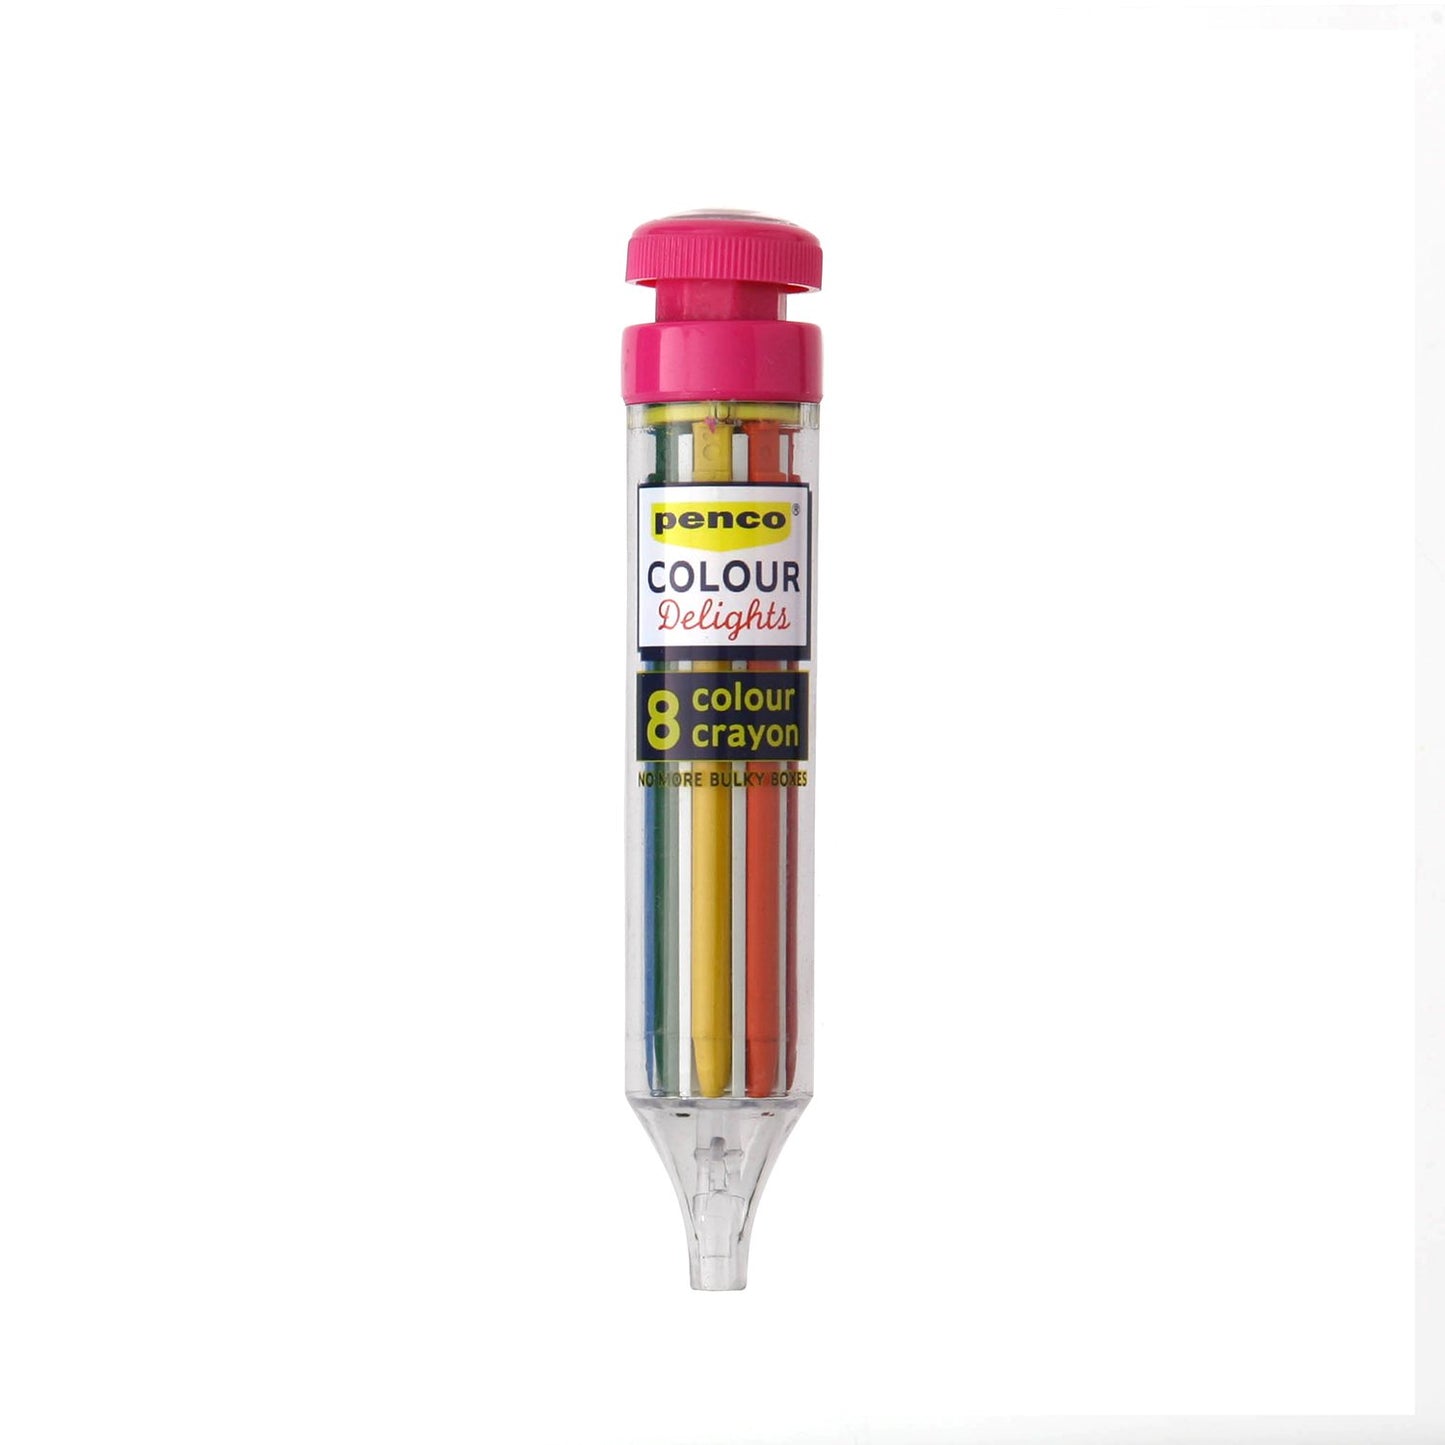 8 Color Crayon (PENCO)